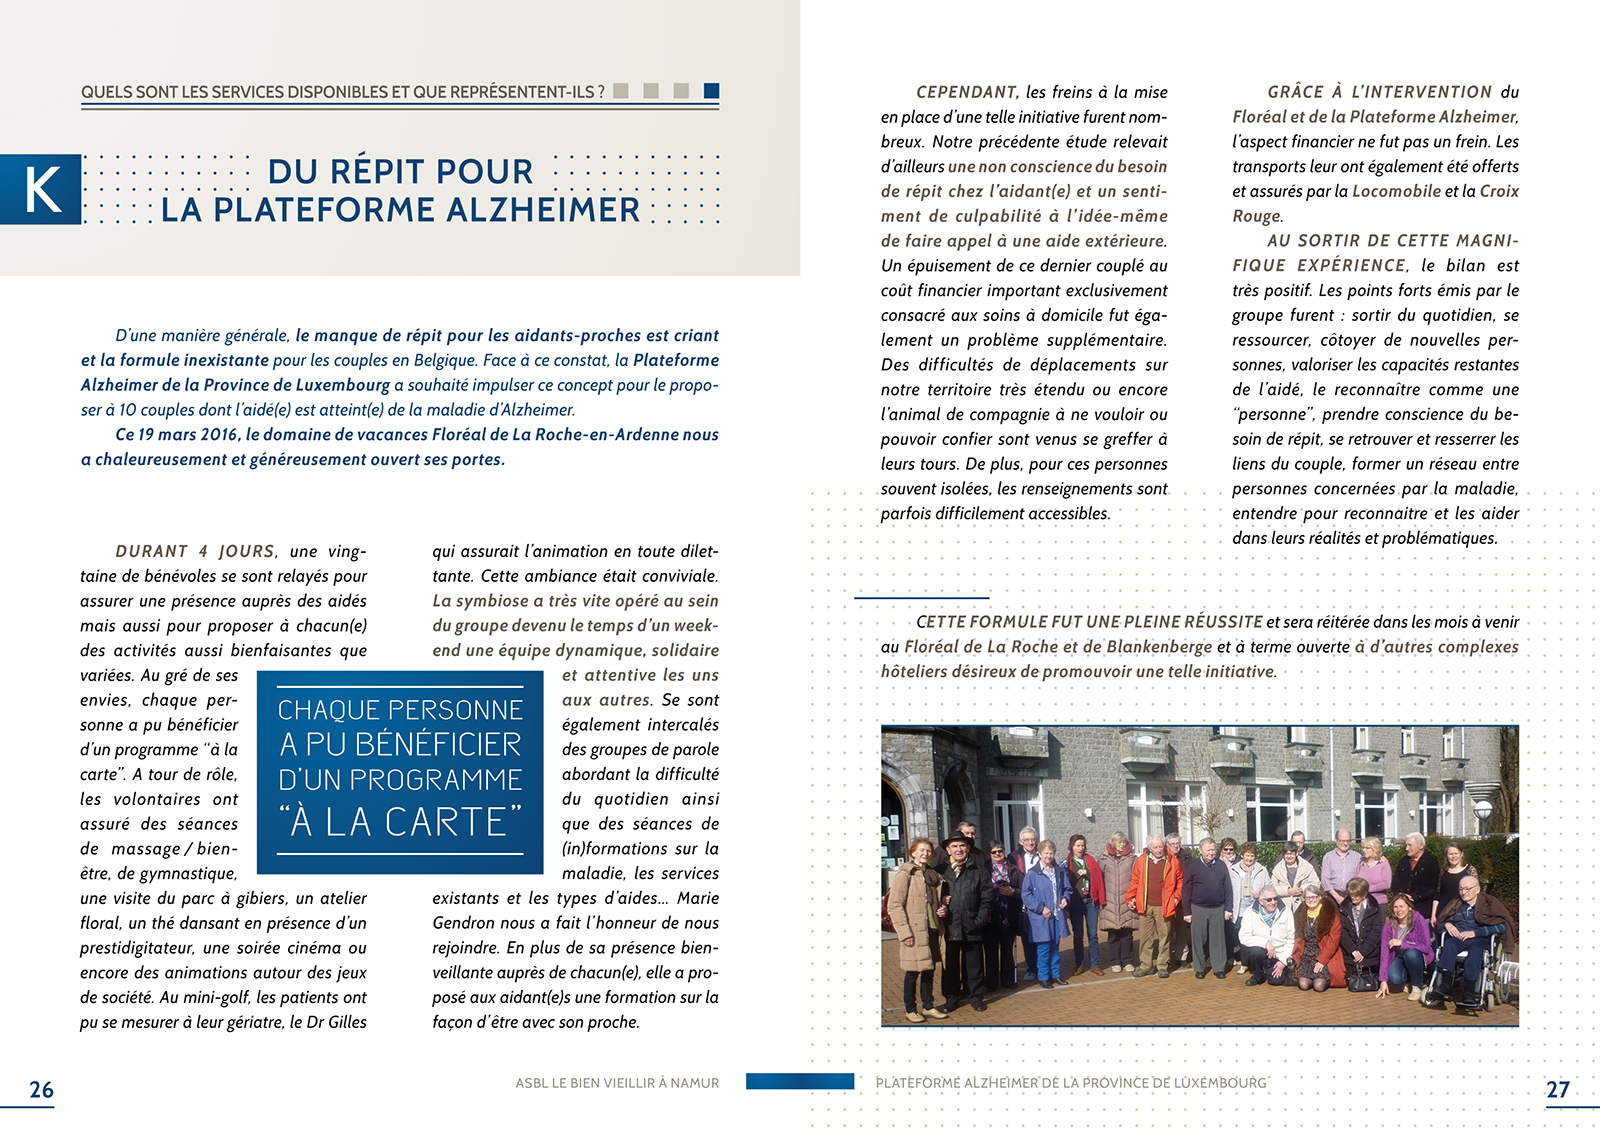 Aperçu page des actions menées par la plateforme Alzheimer